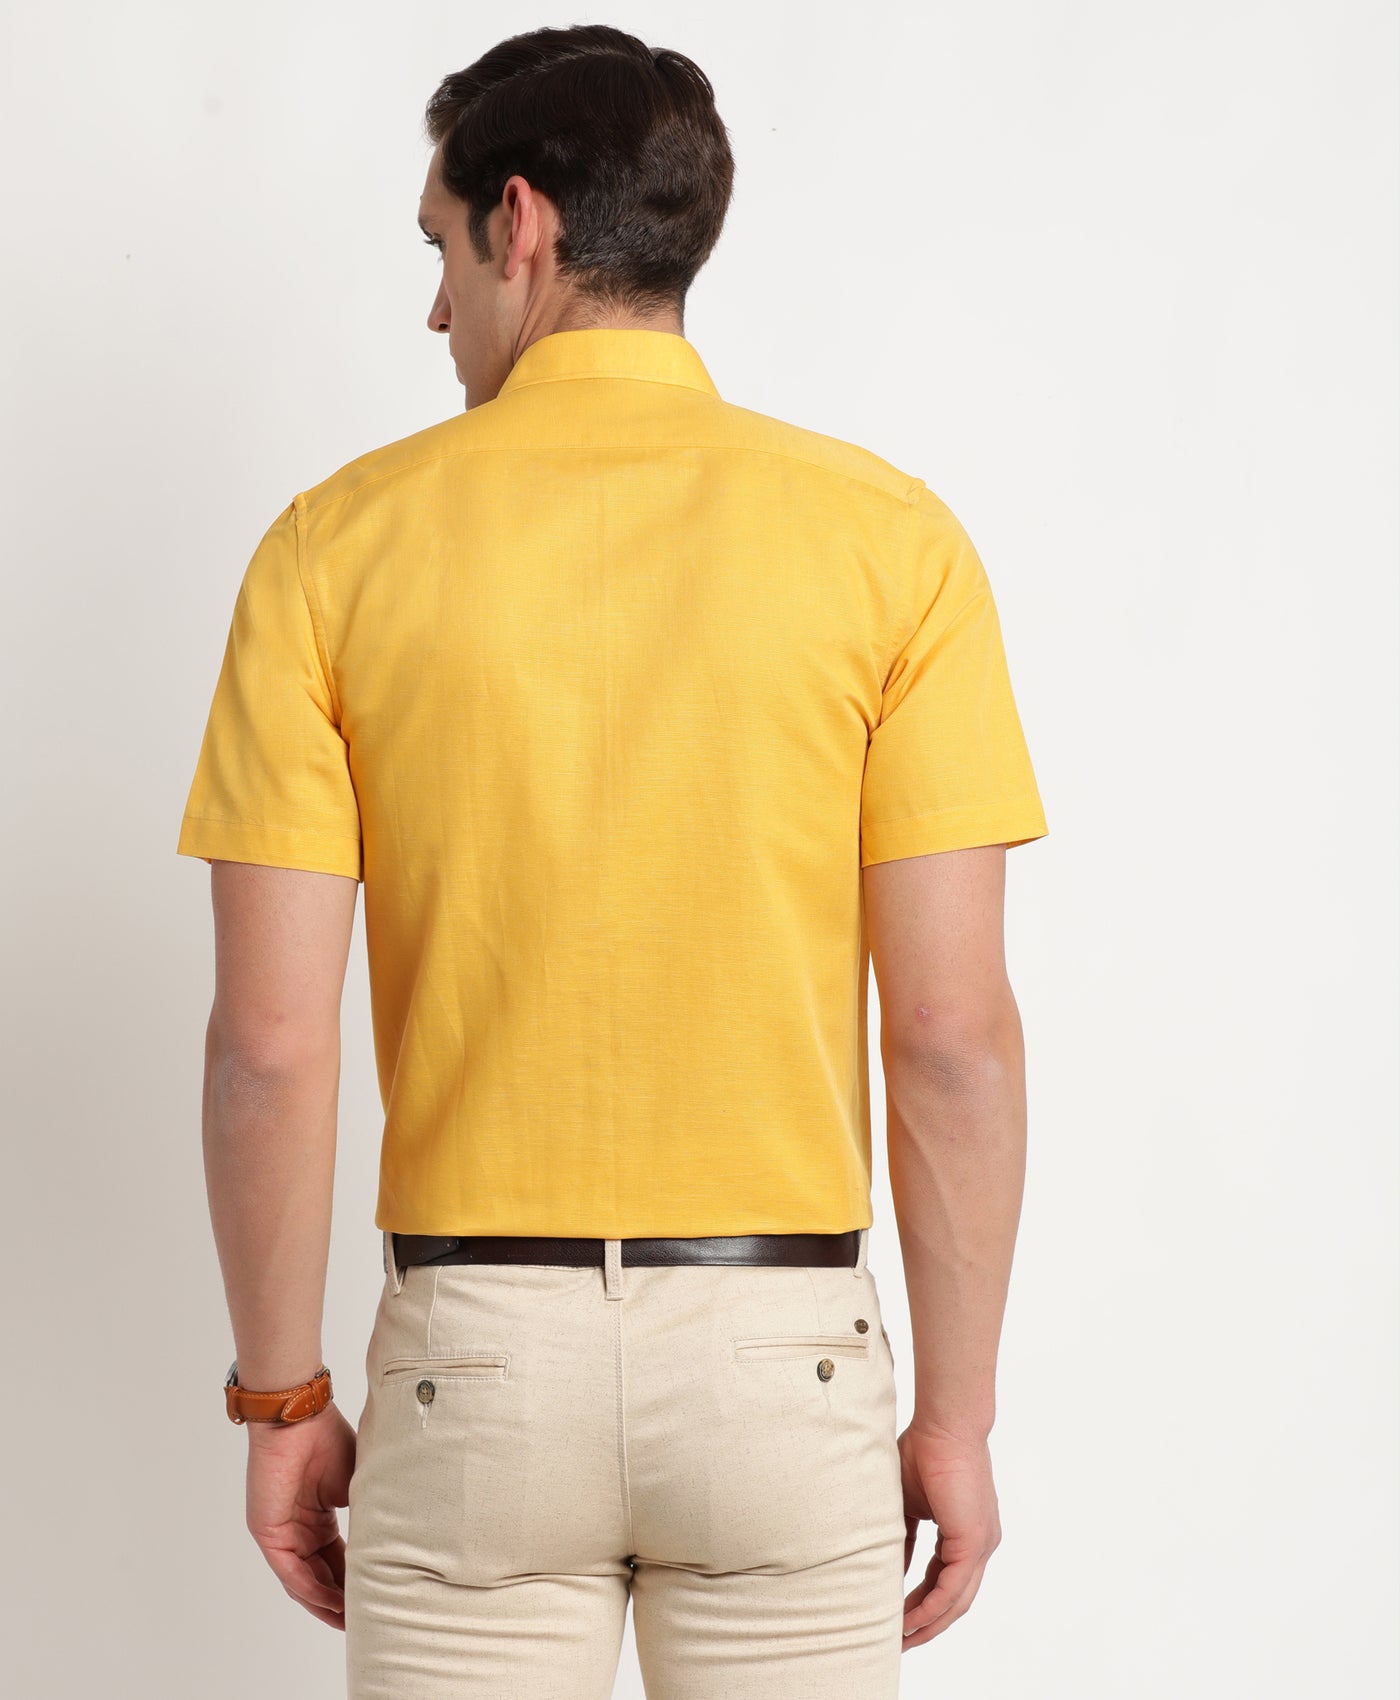 Cotton Linen Yellow Plain Regular Fit Half Sleeve Formal Shirt